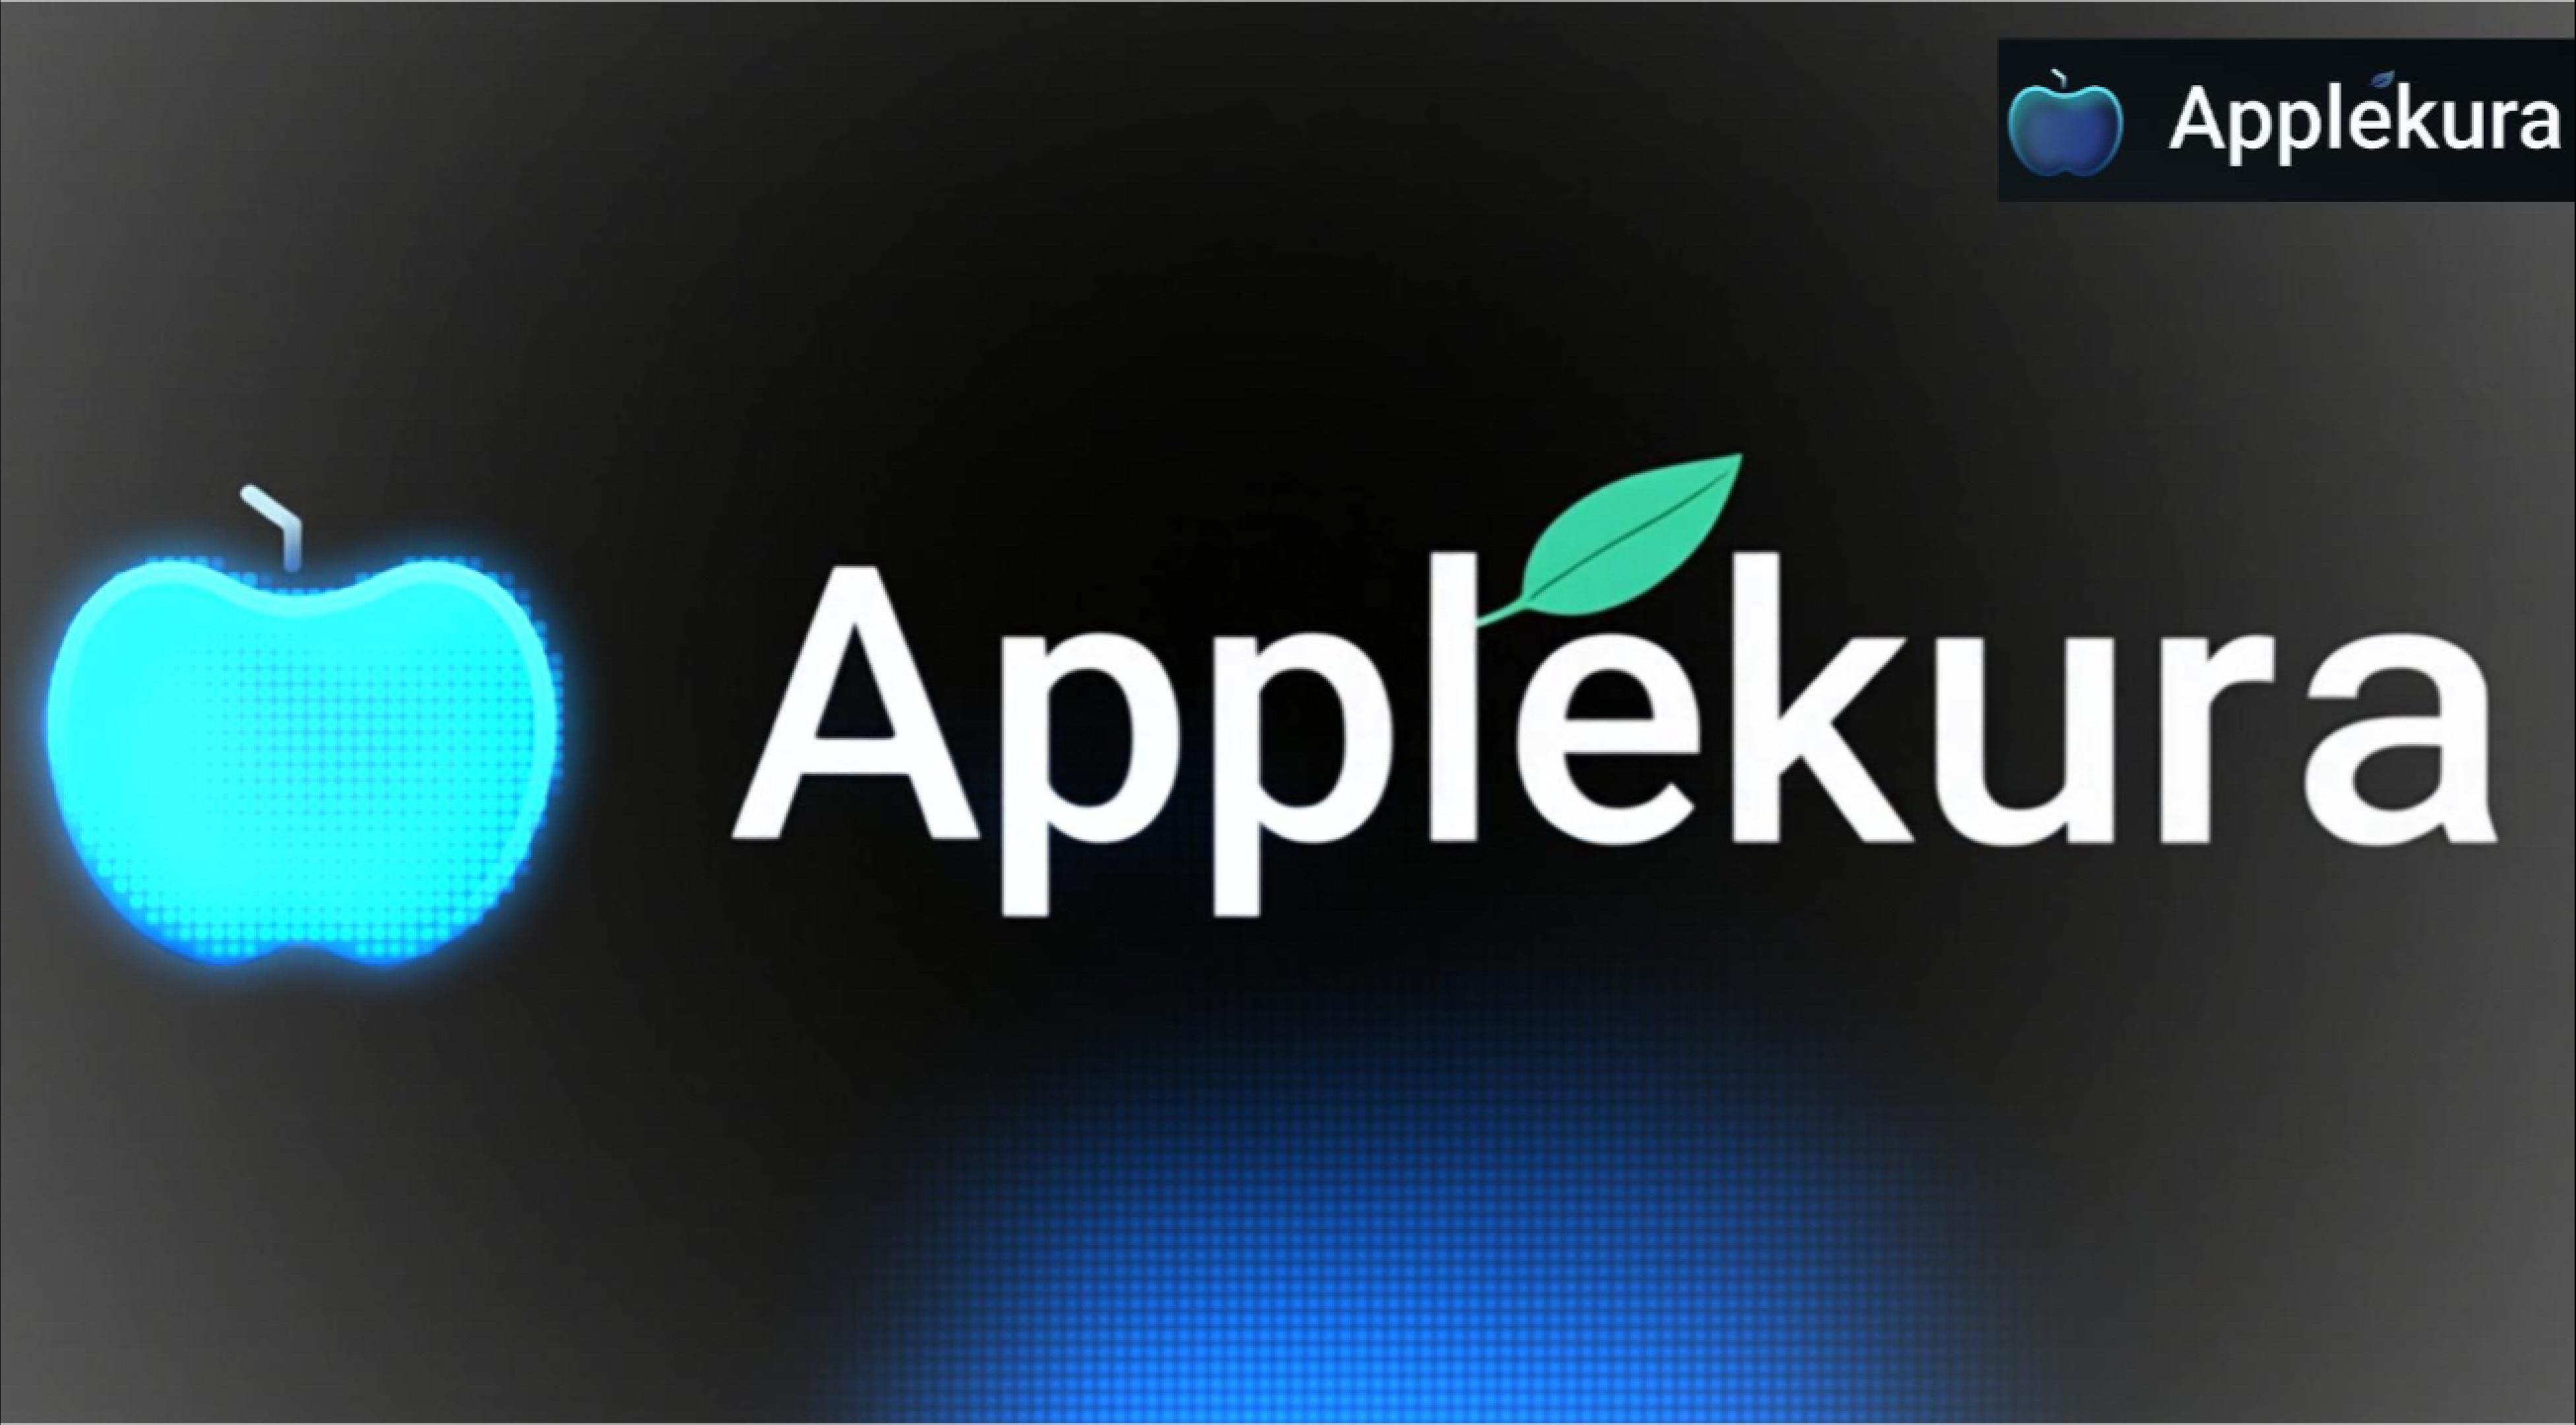 AppleKura_commercial_ver1-Cover.jpg